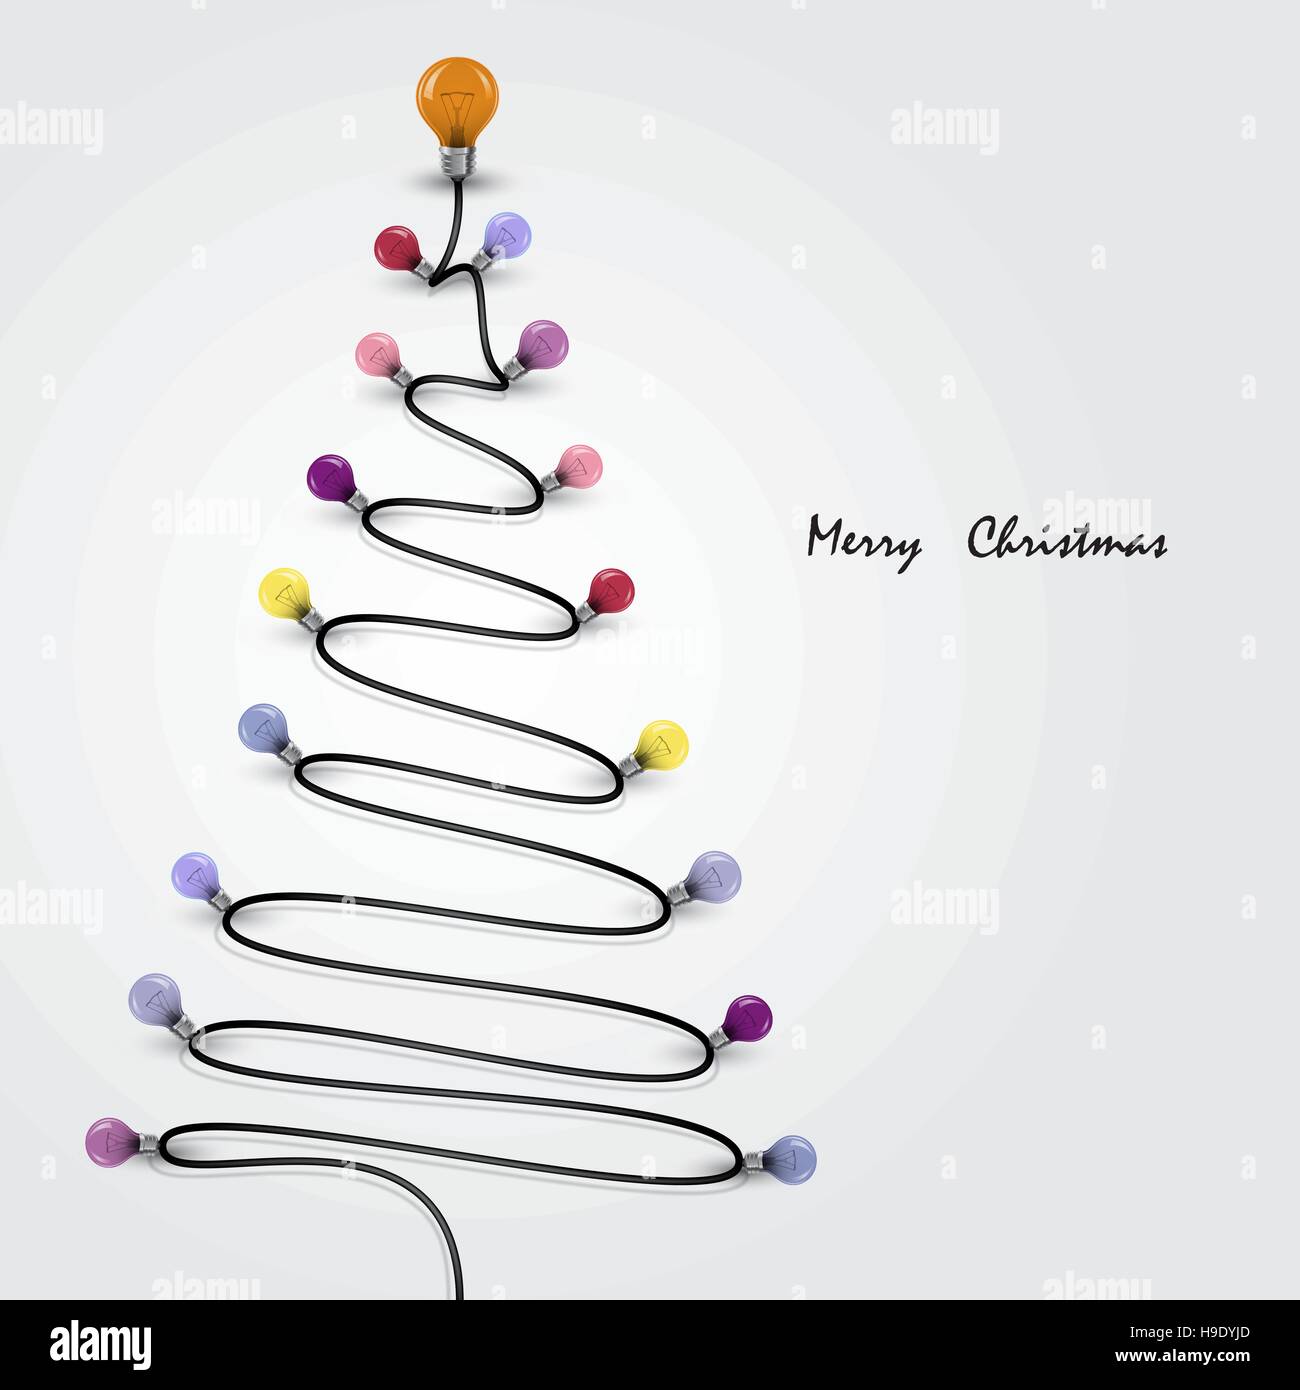 Bunte Glühbirnen und Weihnachtsbaum-Symbol. Frohe Weihnachten abstrakten Hintergrund. Vektor-illustration Stock Vektor